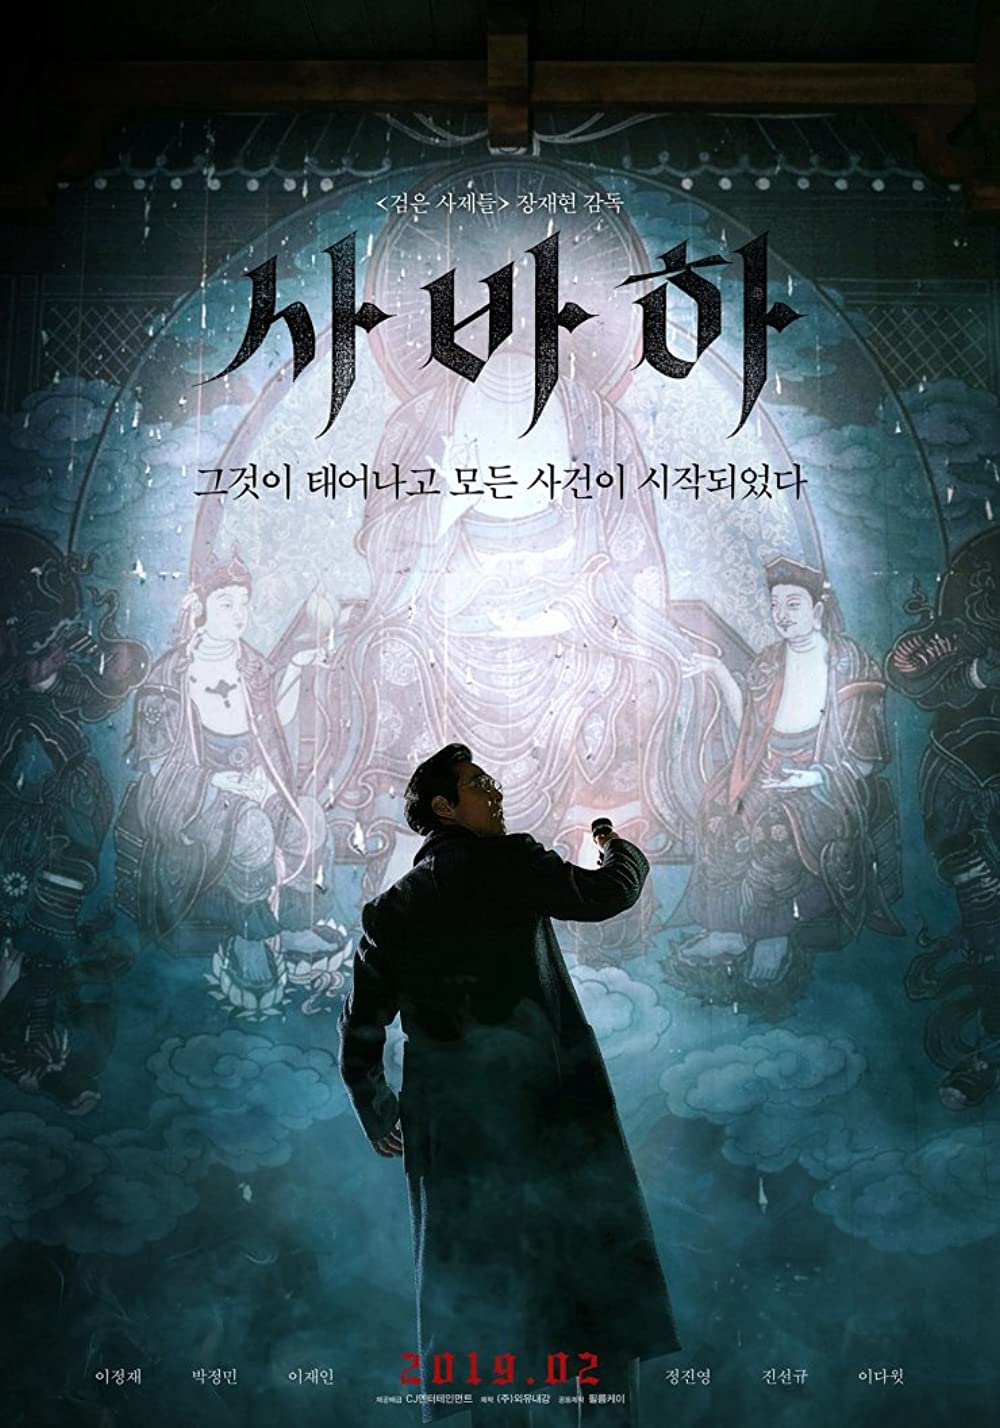 11 Film Korea Netflix terbaik, dari genre thriller sampai romantis